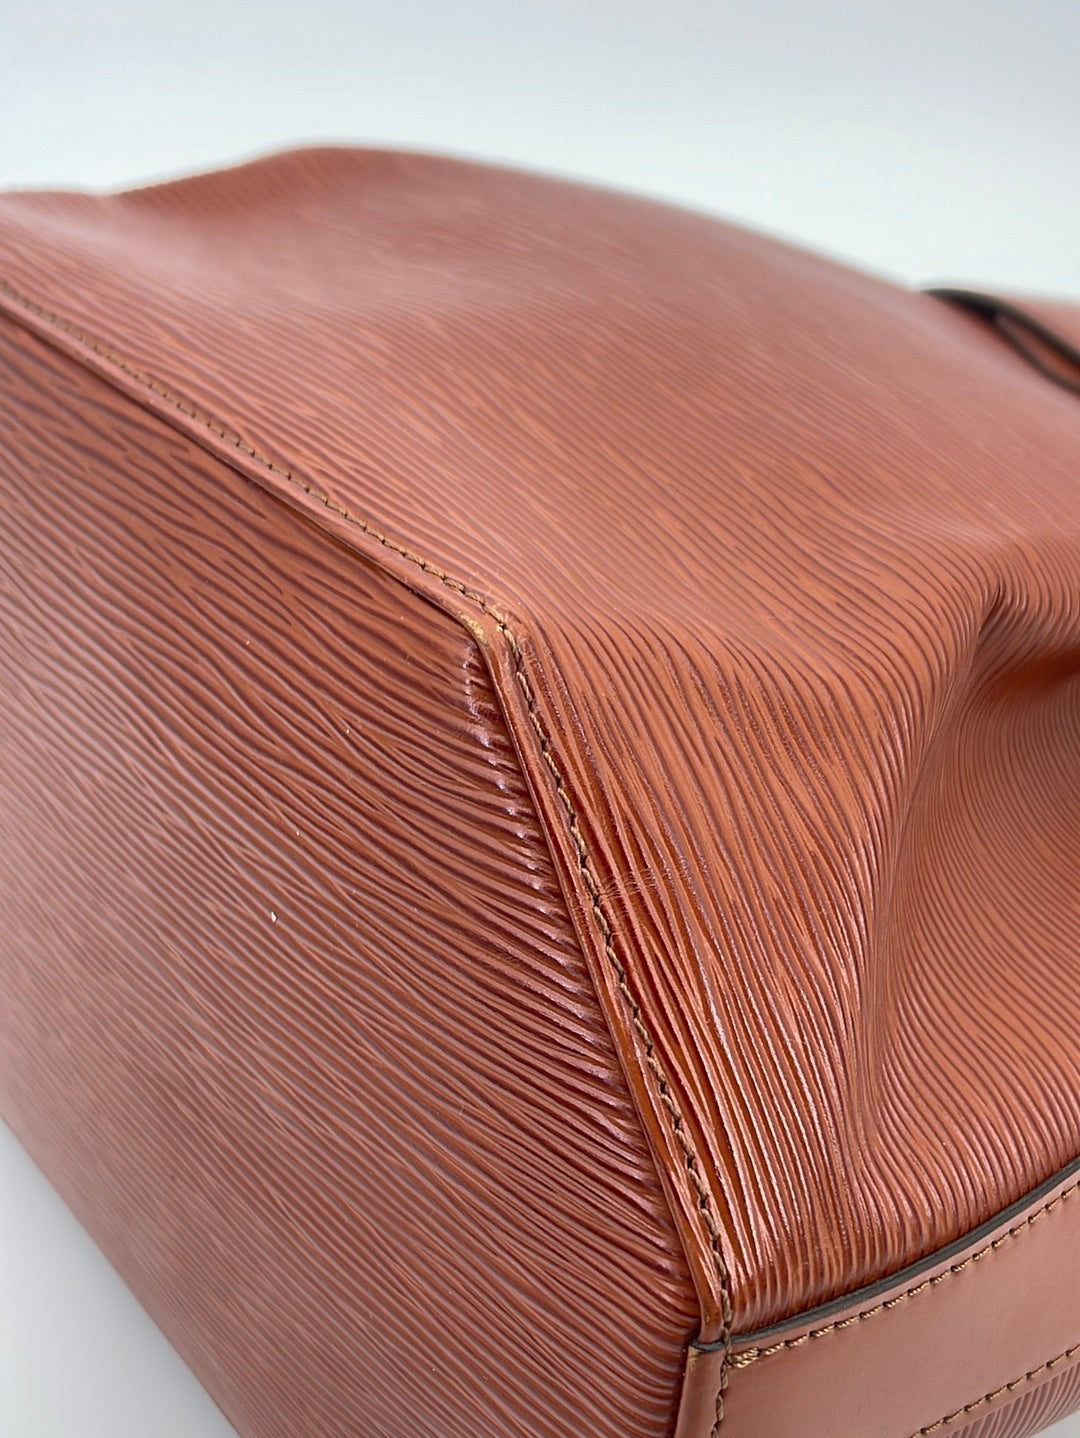 USD50OFF】Louis Vuitton LV GHW Trunk Clutch Shoulder Bag M51697 Epi Leat